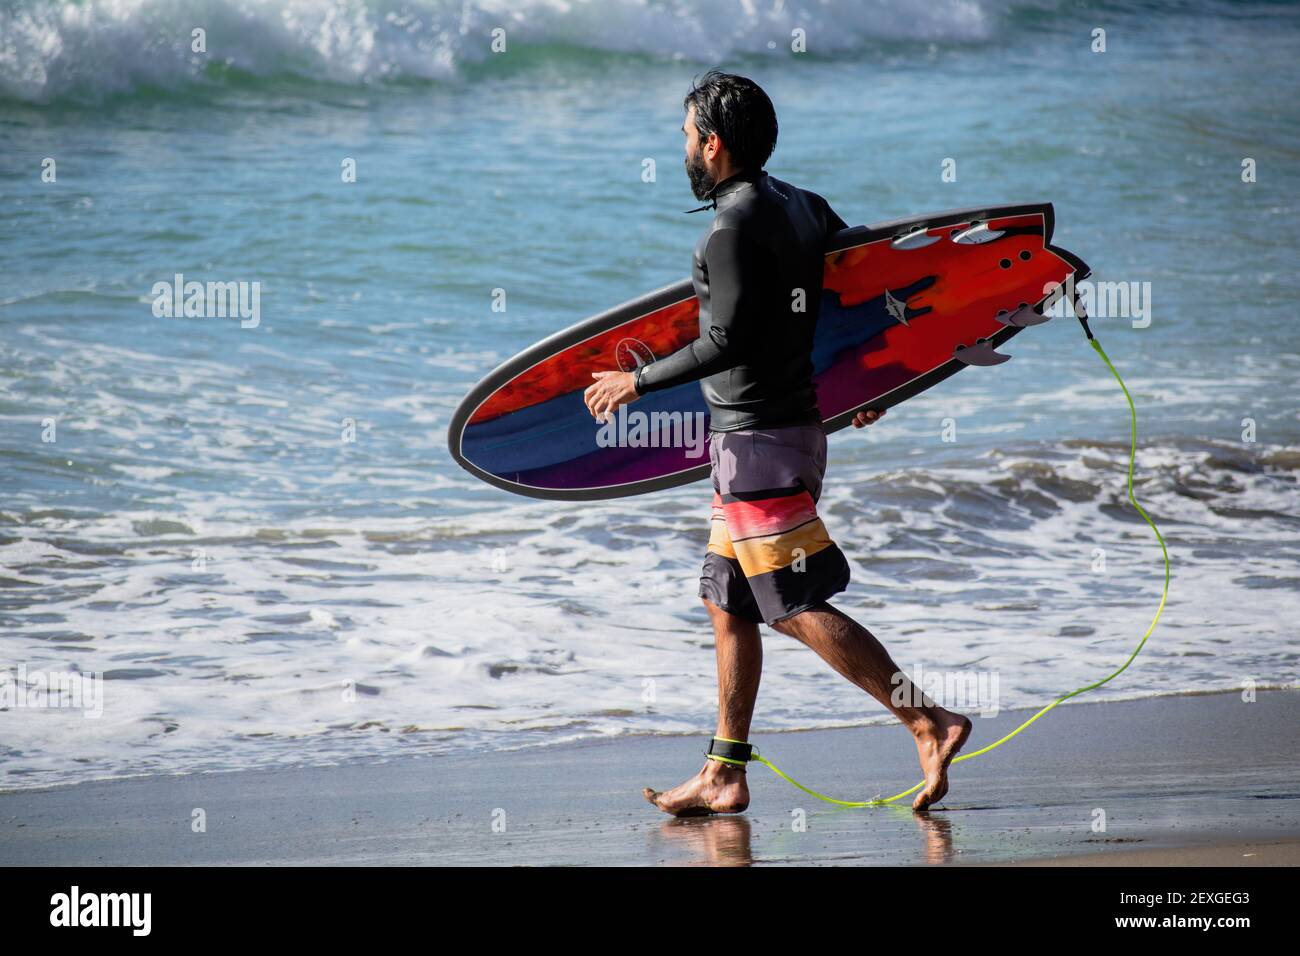 AUCKLAND, NUOVA ZELANDA - 21 febbraio 2021: Vista del surfer con il surf colorato che entra in acqua alla spiaggia di Piha, Auckland, Nuova Zelanda Foto Stock